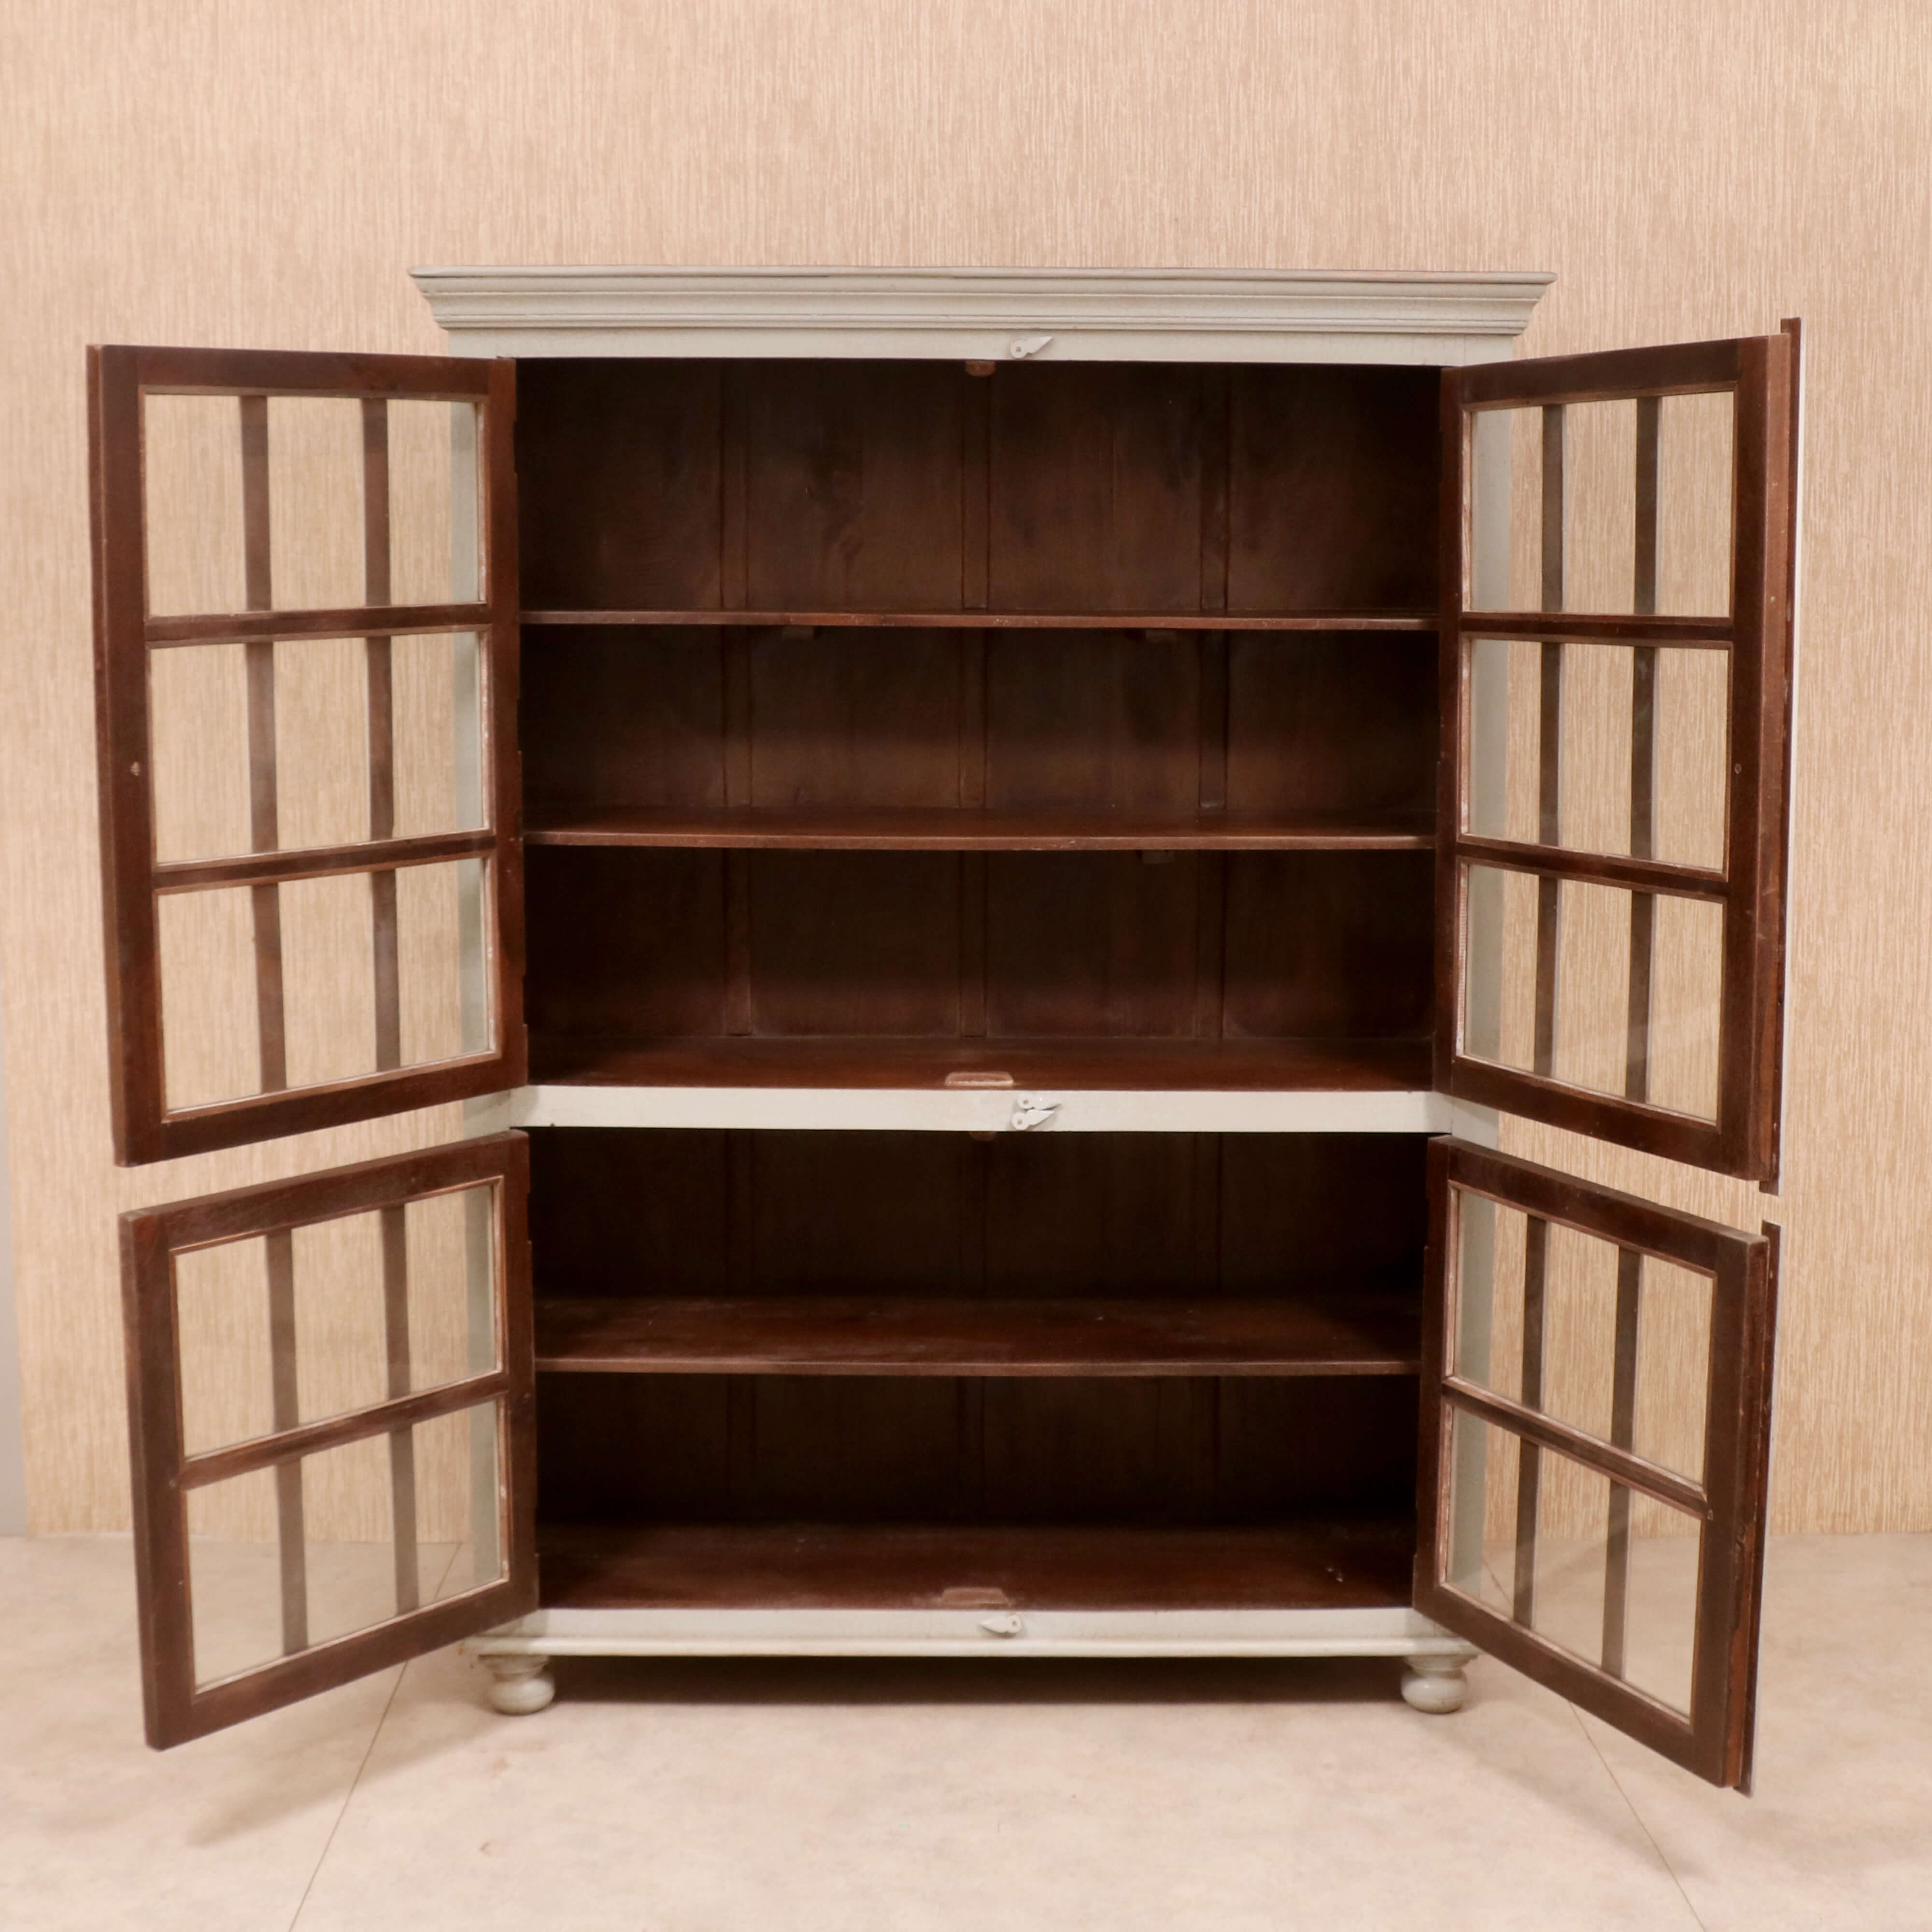 Solid wood Wide Bookshelf Showcase